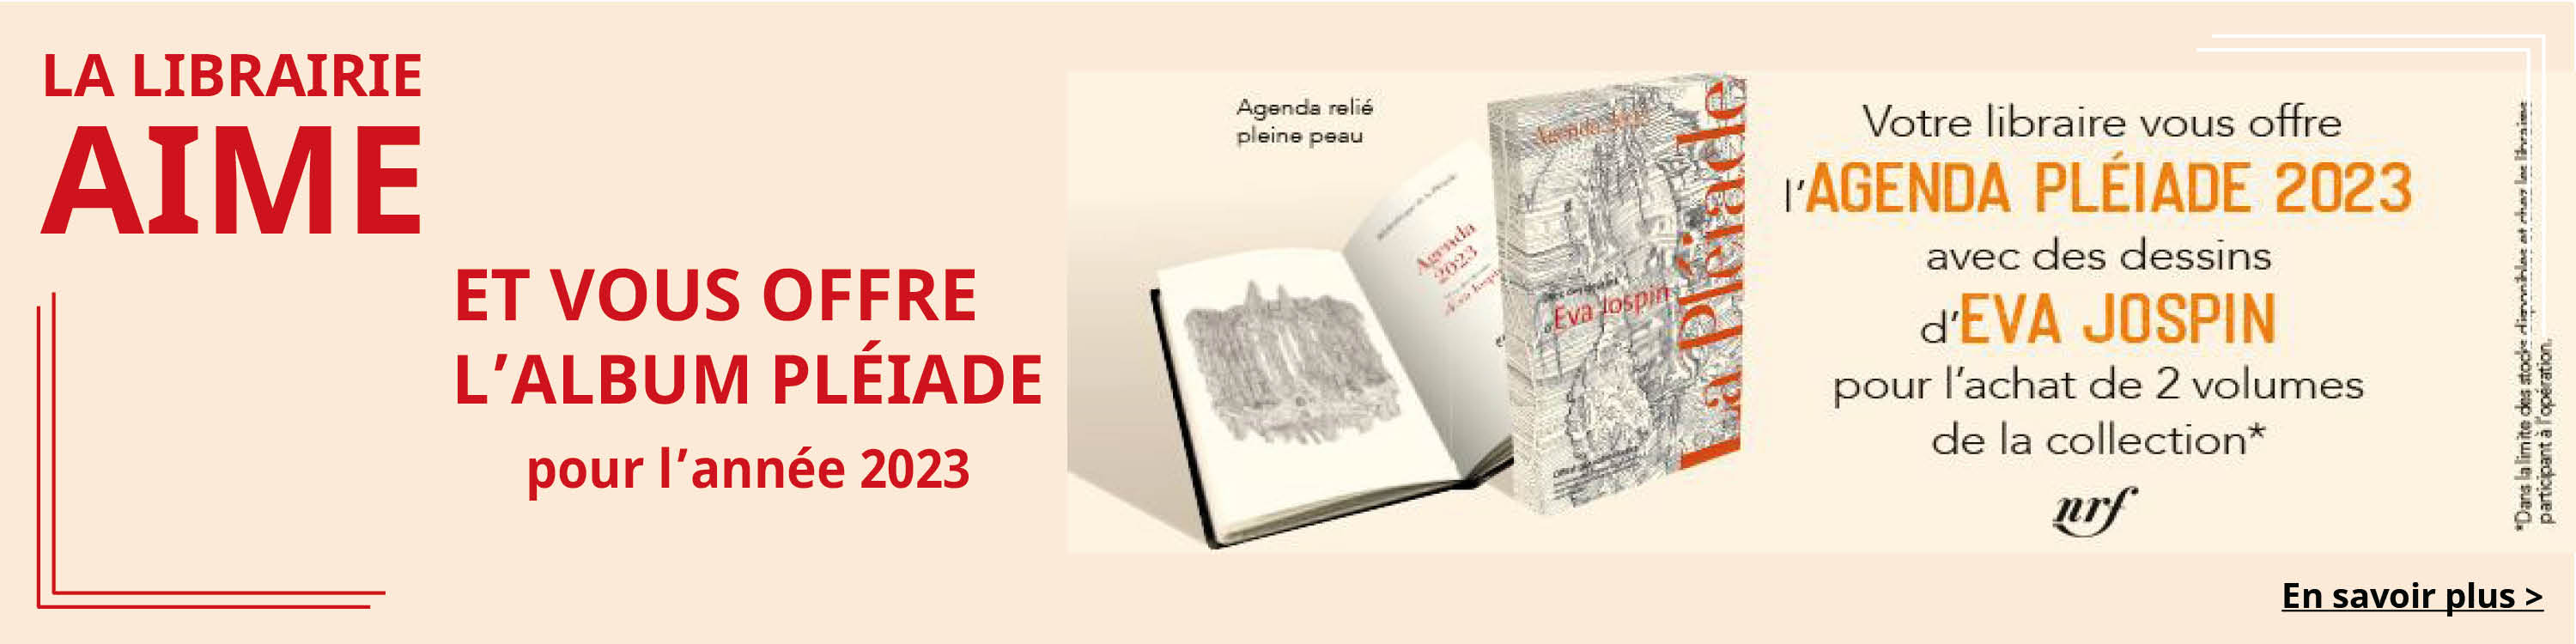 La Librairie Gallimard vous offre l'agenda Pléiade 2023